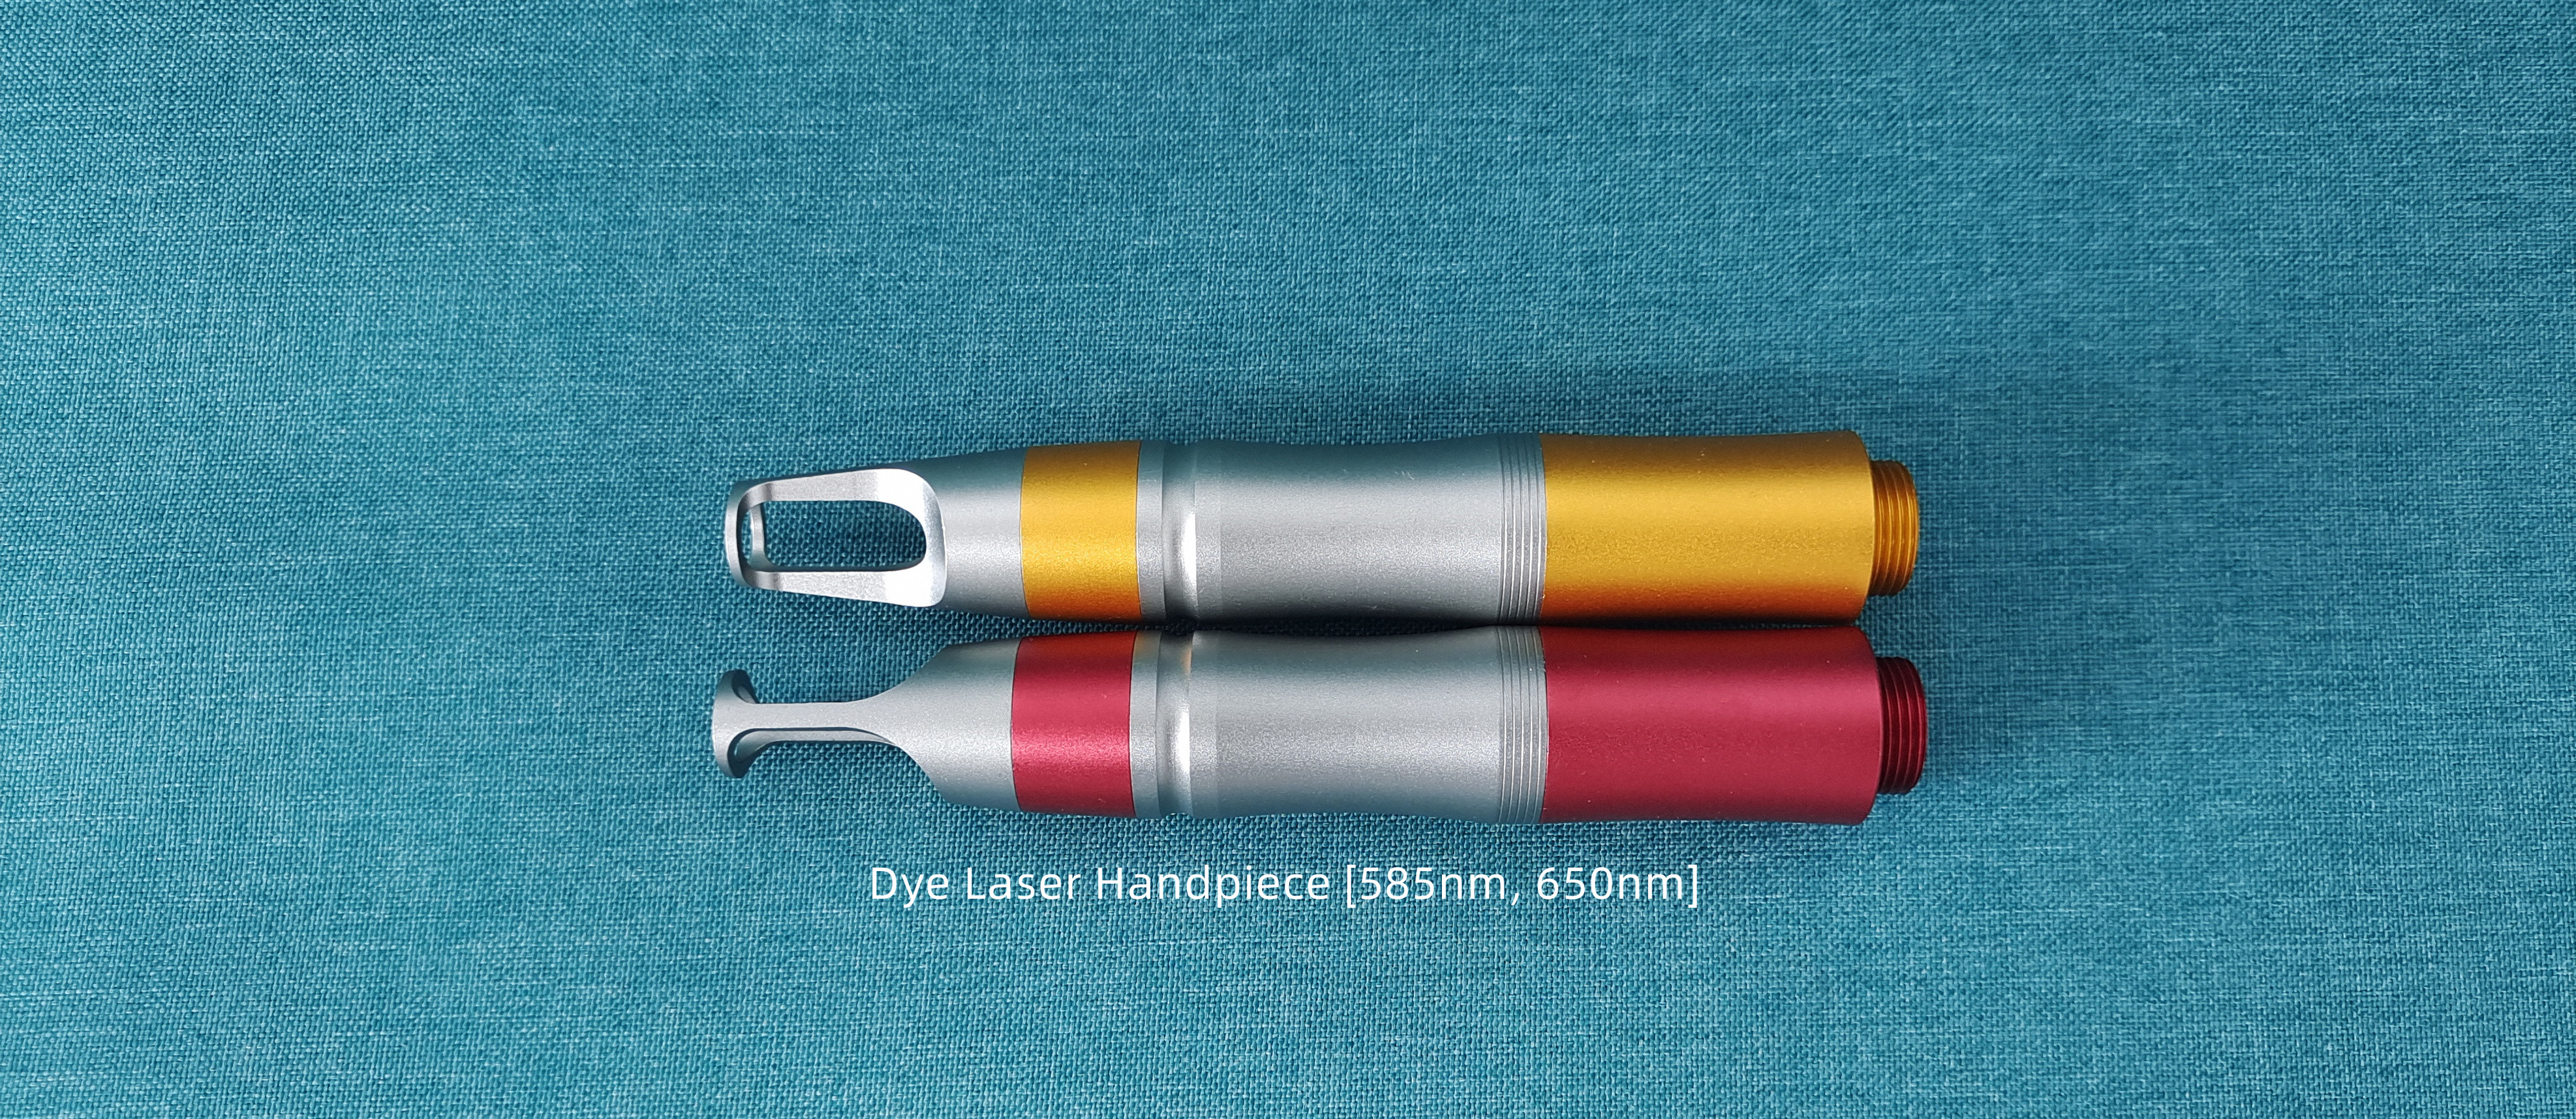 Dye Laser Handpiece-585 & 650-WISOPTIC